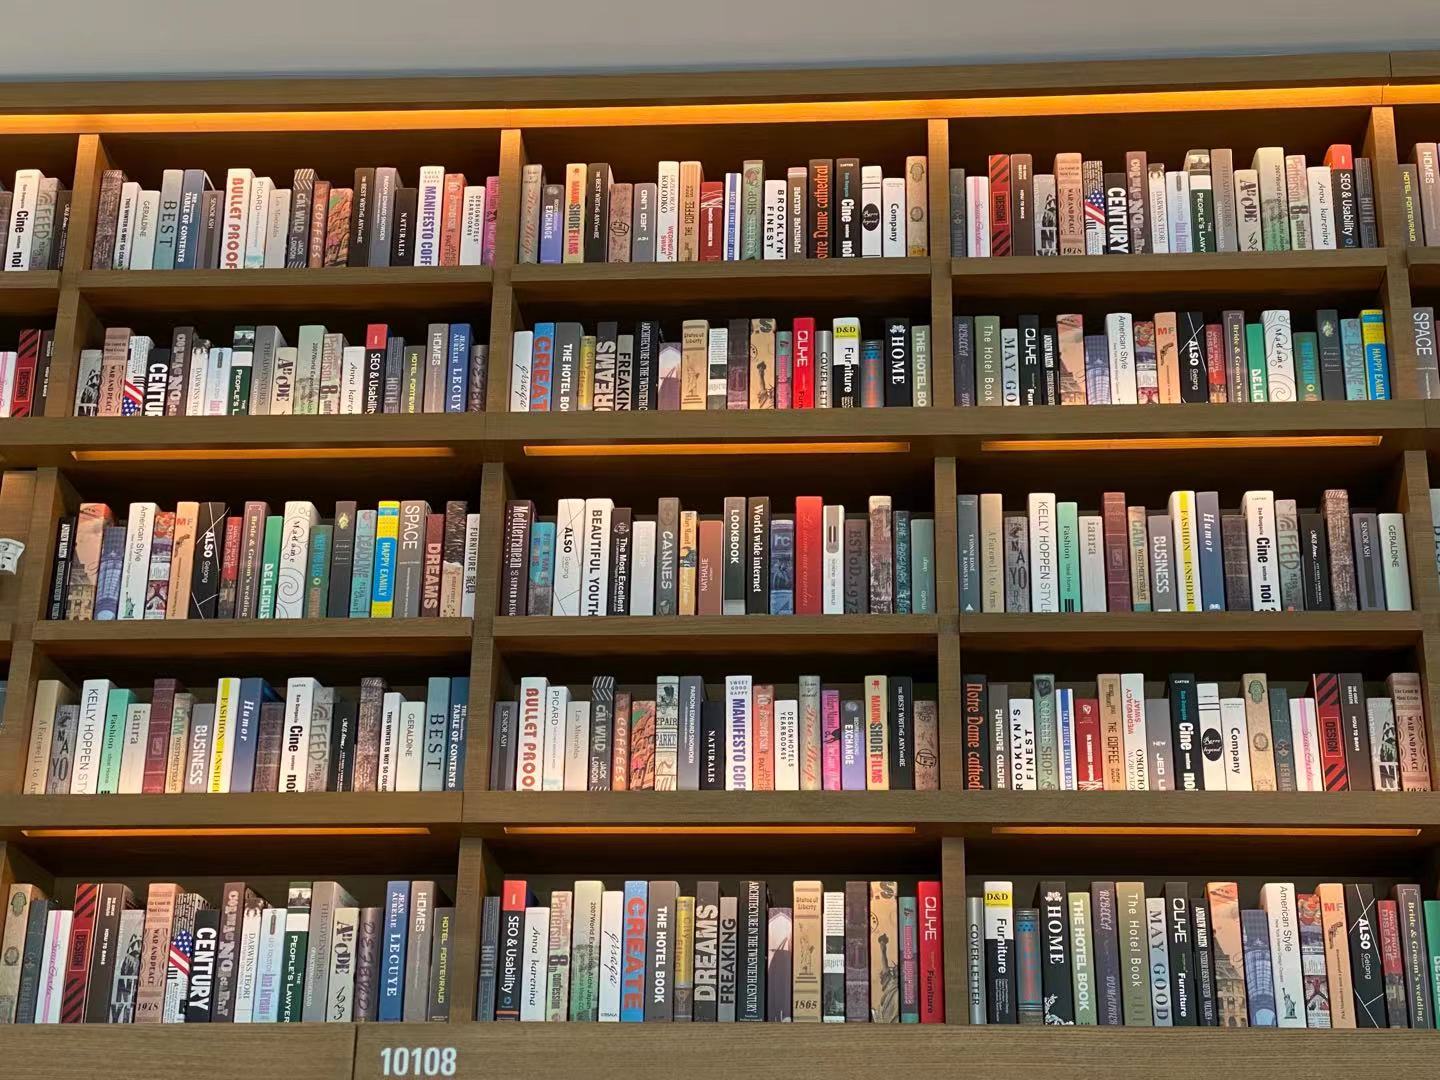 杭州茑屋书店书柜上部摆满装饰书:为了美观,顾客反正拿不到